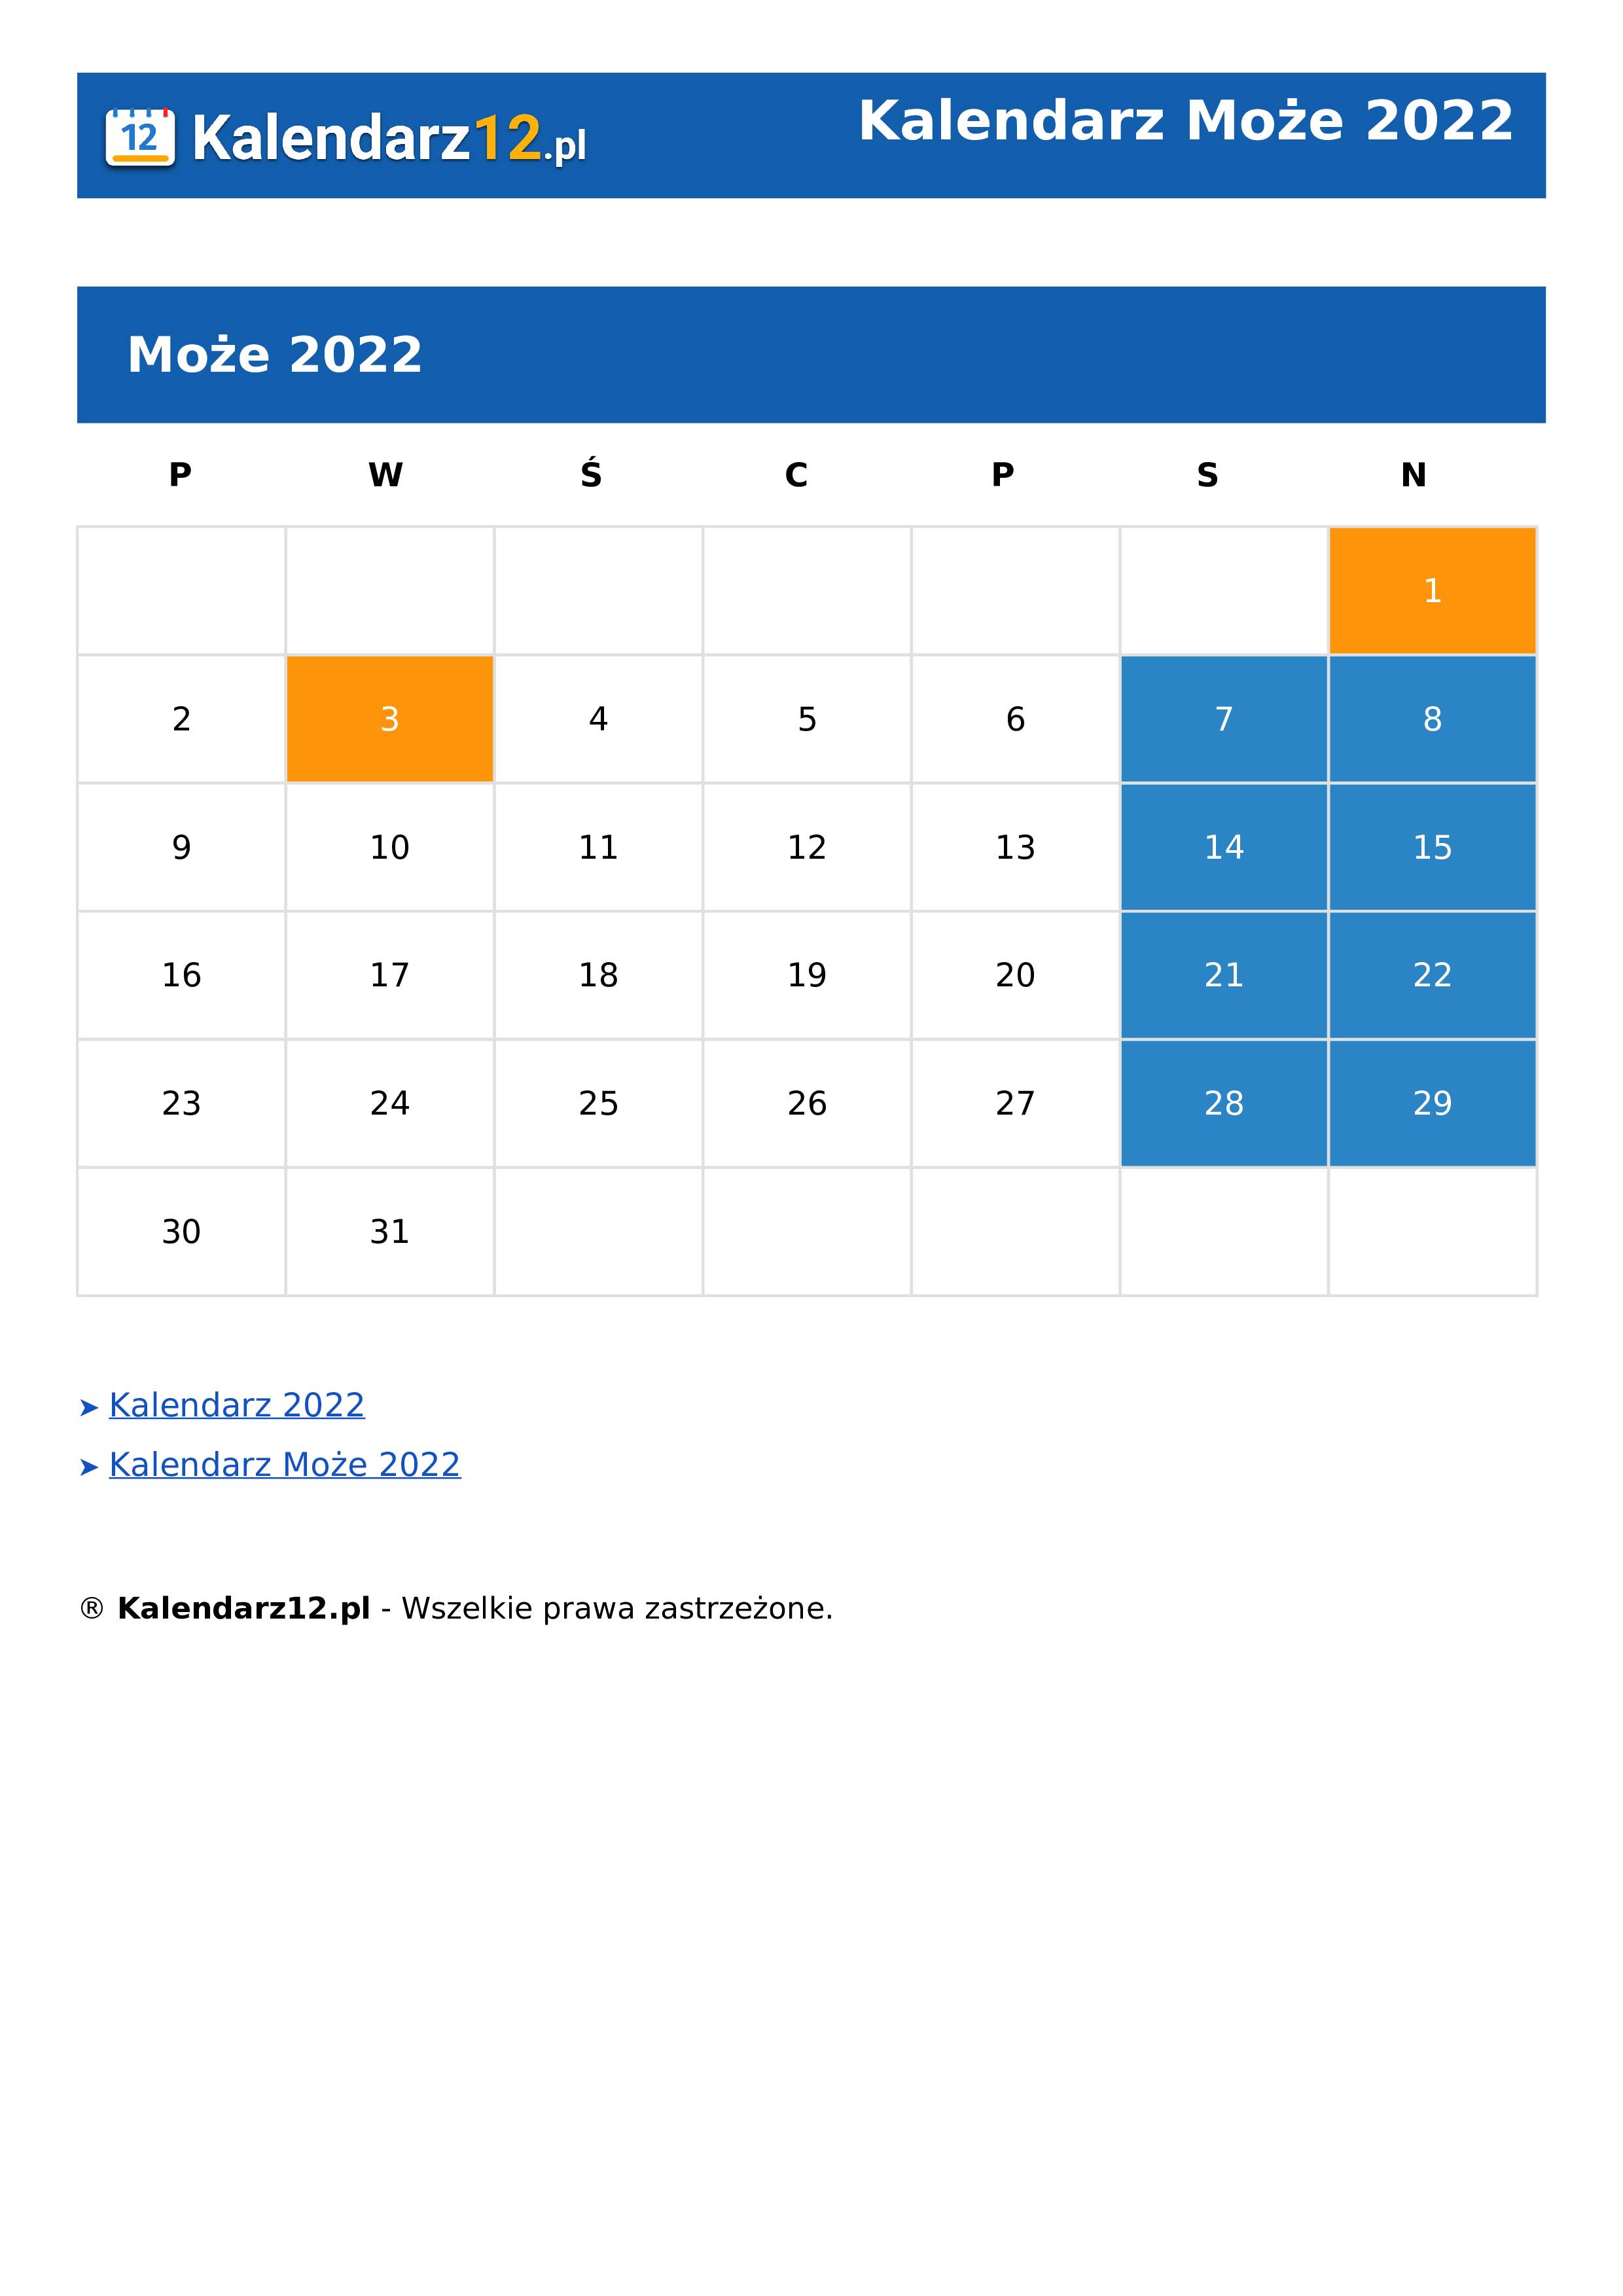 Calendar Może 2022